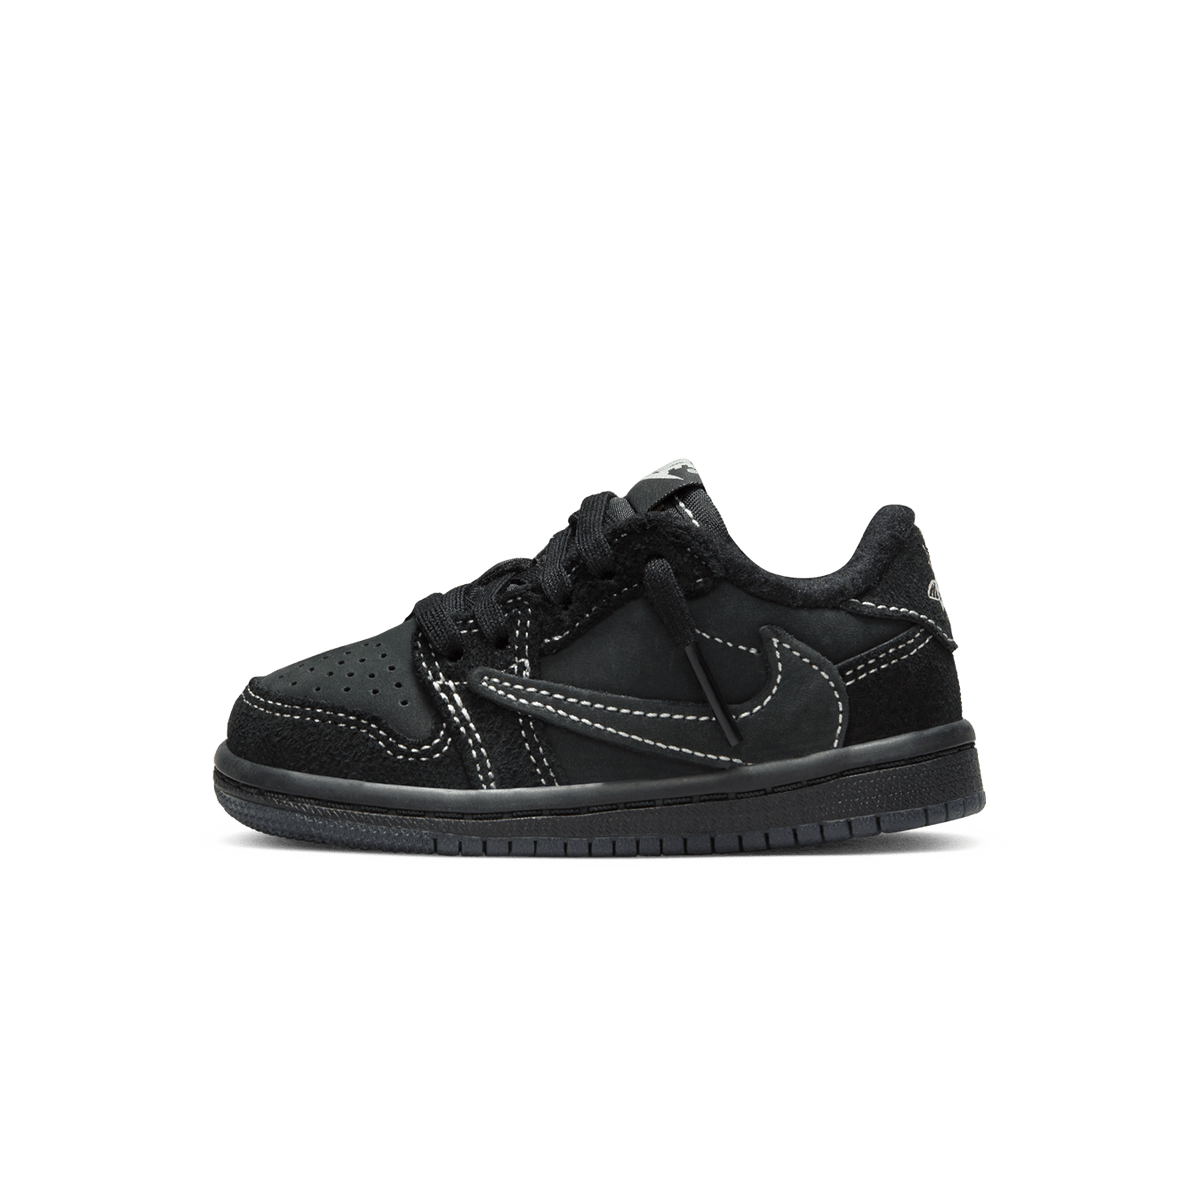 Travis Scott x Nike Sacai Blazer Low Magma Low OG SP TD 'Black Phantom' - CerbeShops